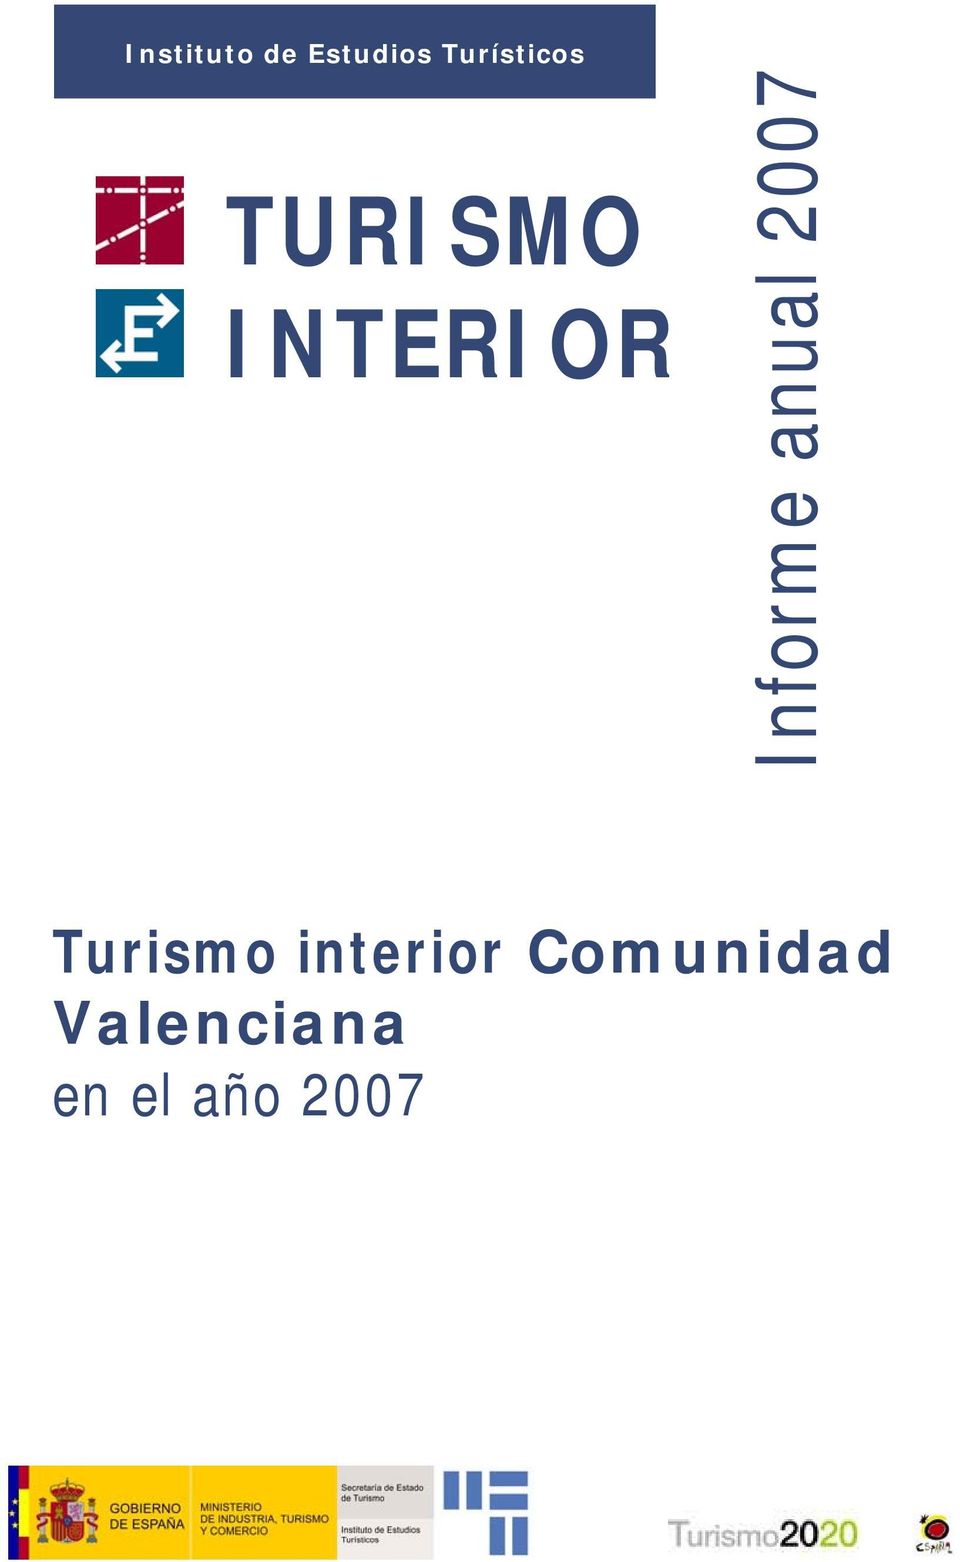 Turismo interior